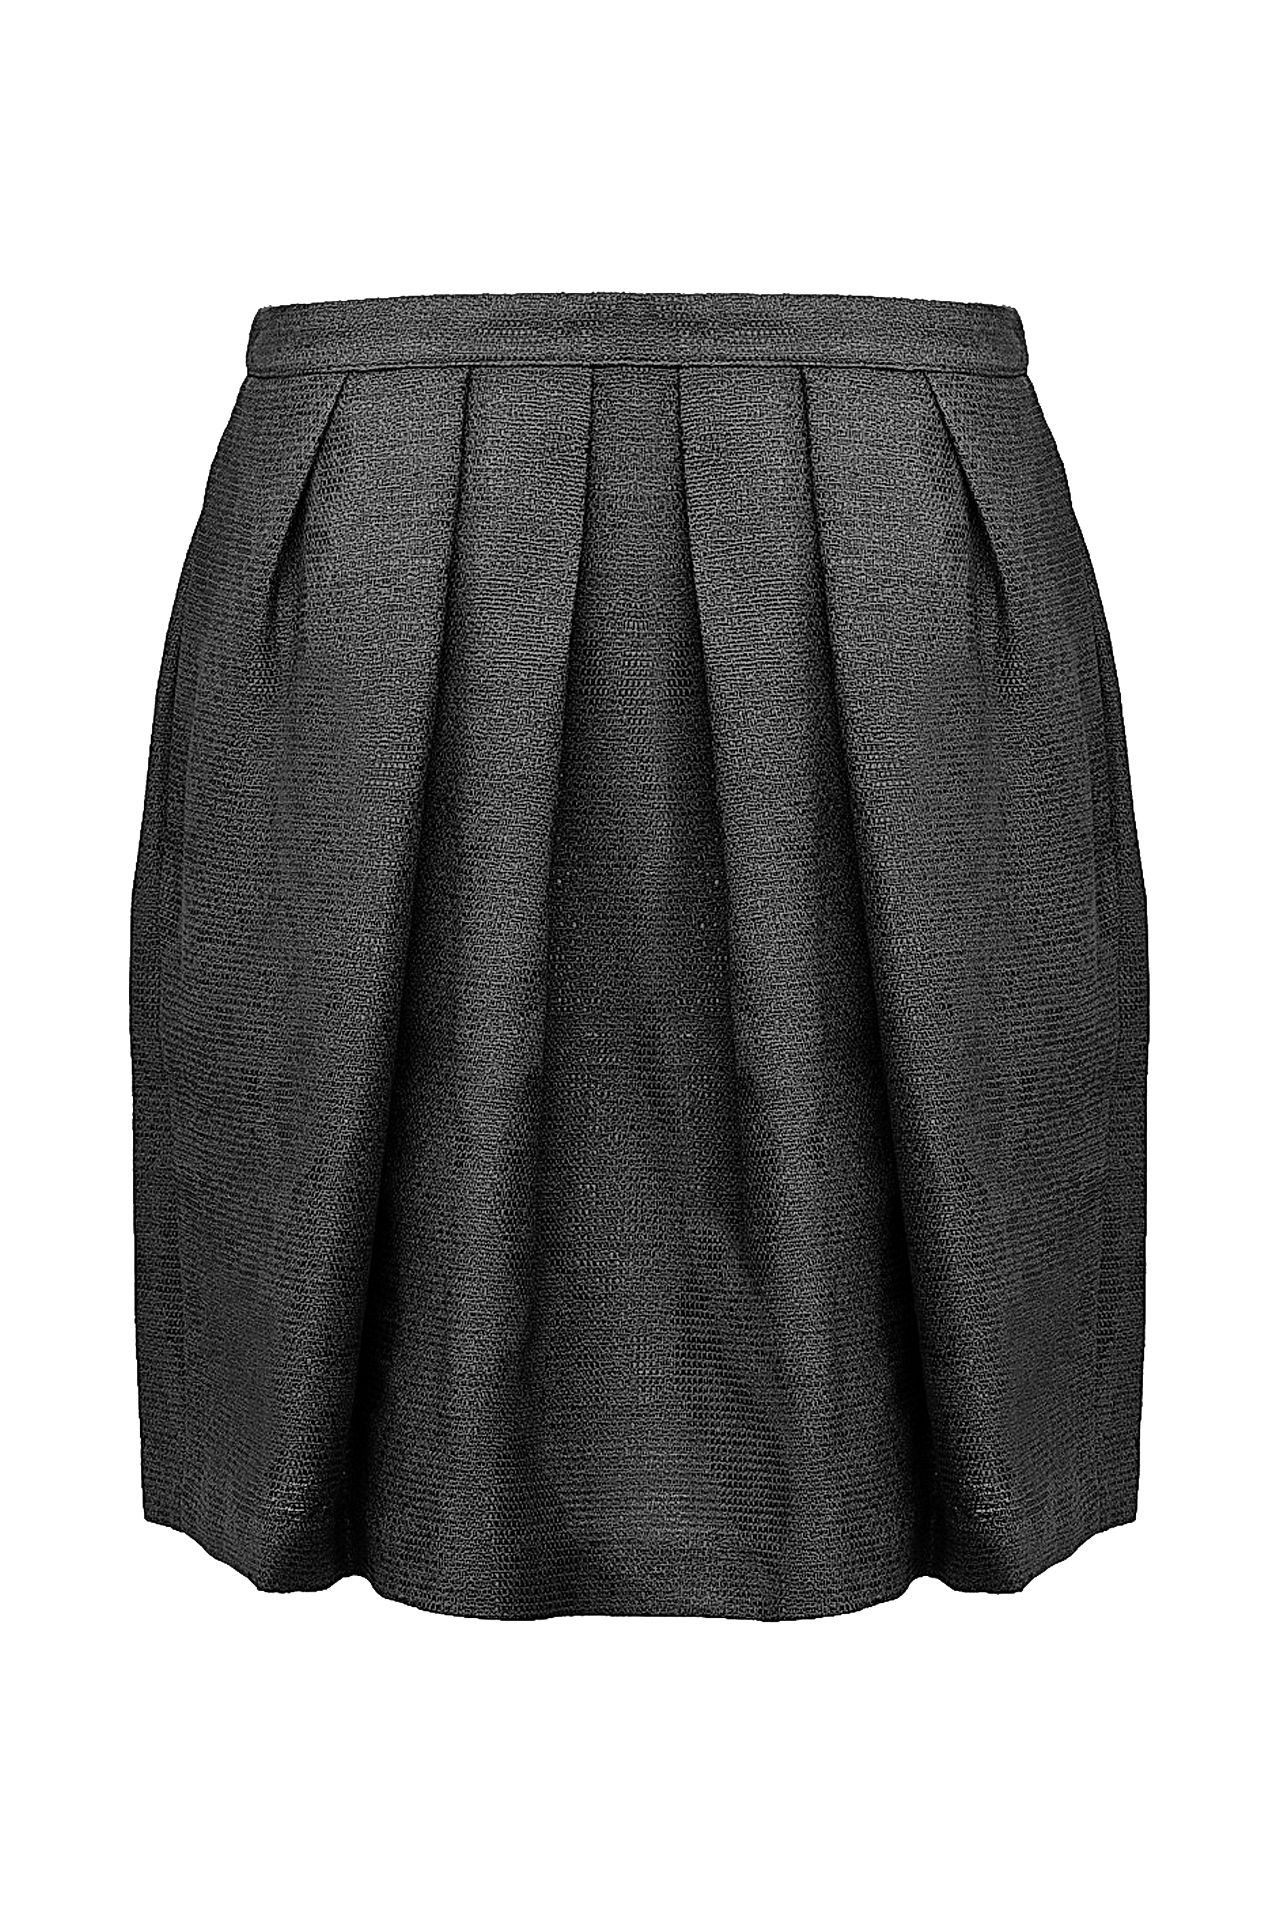 Одежда женская Юбка NUDE (1103747/14.2). Купить за 10320 руб.